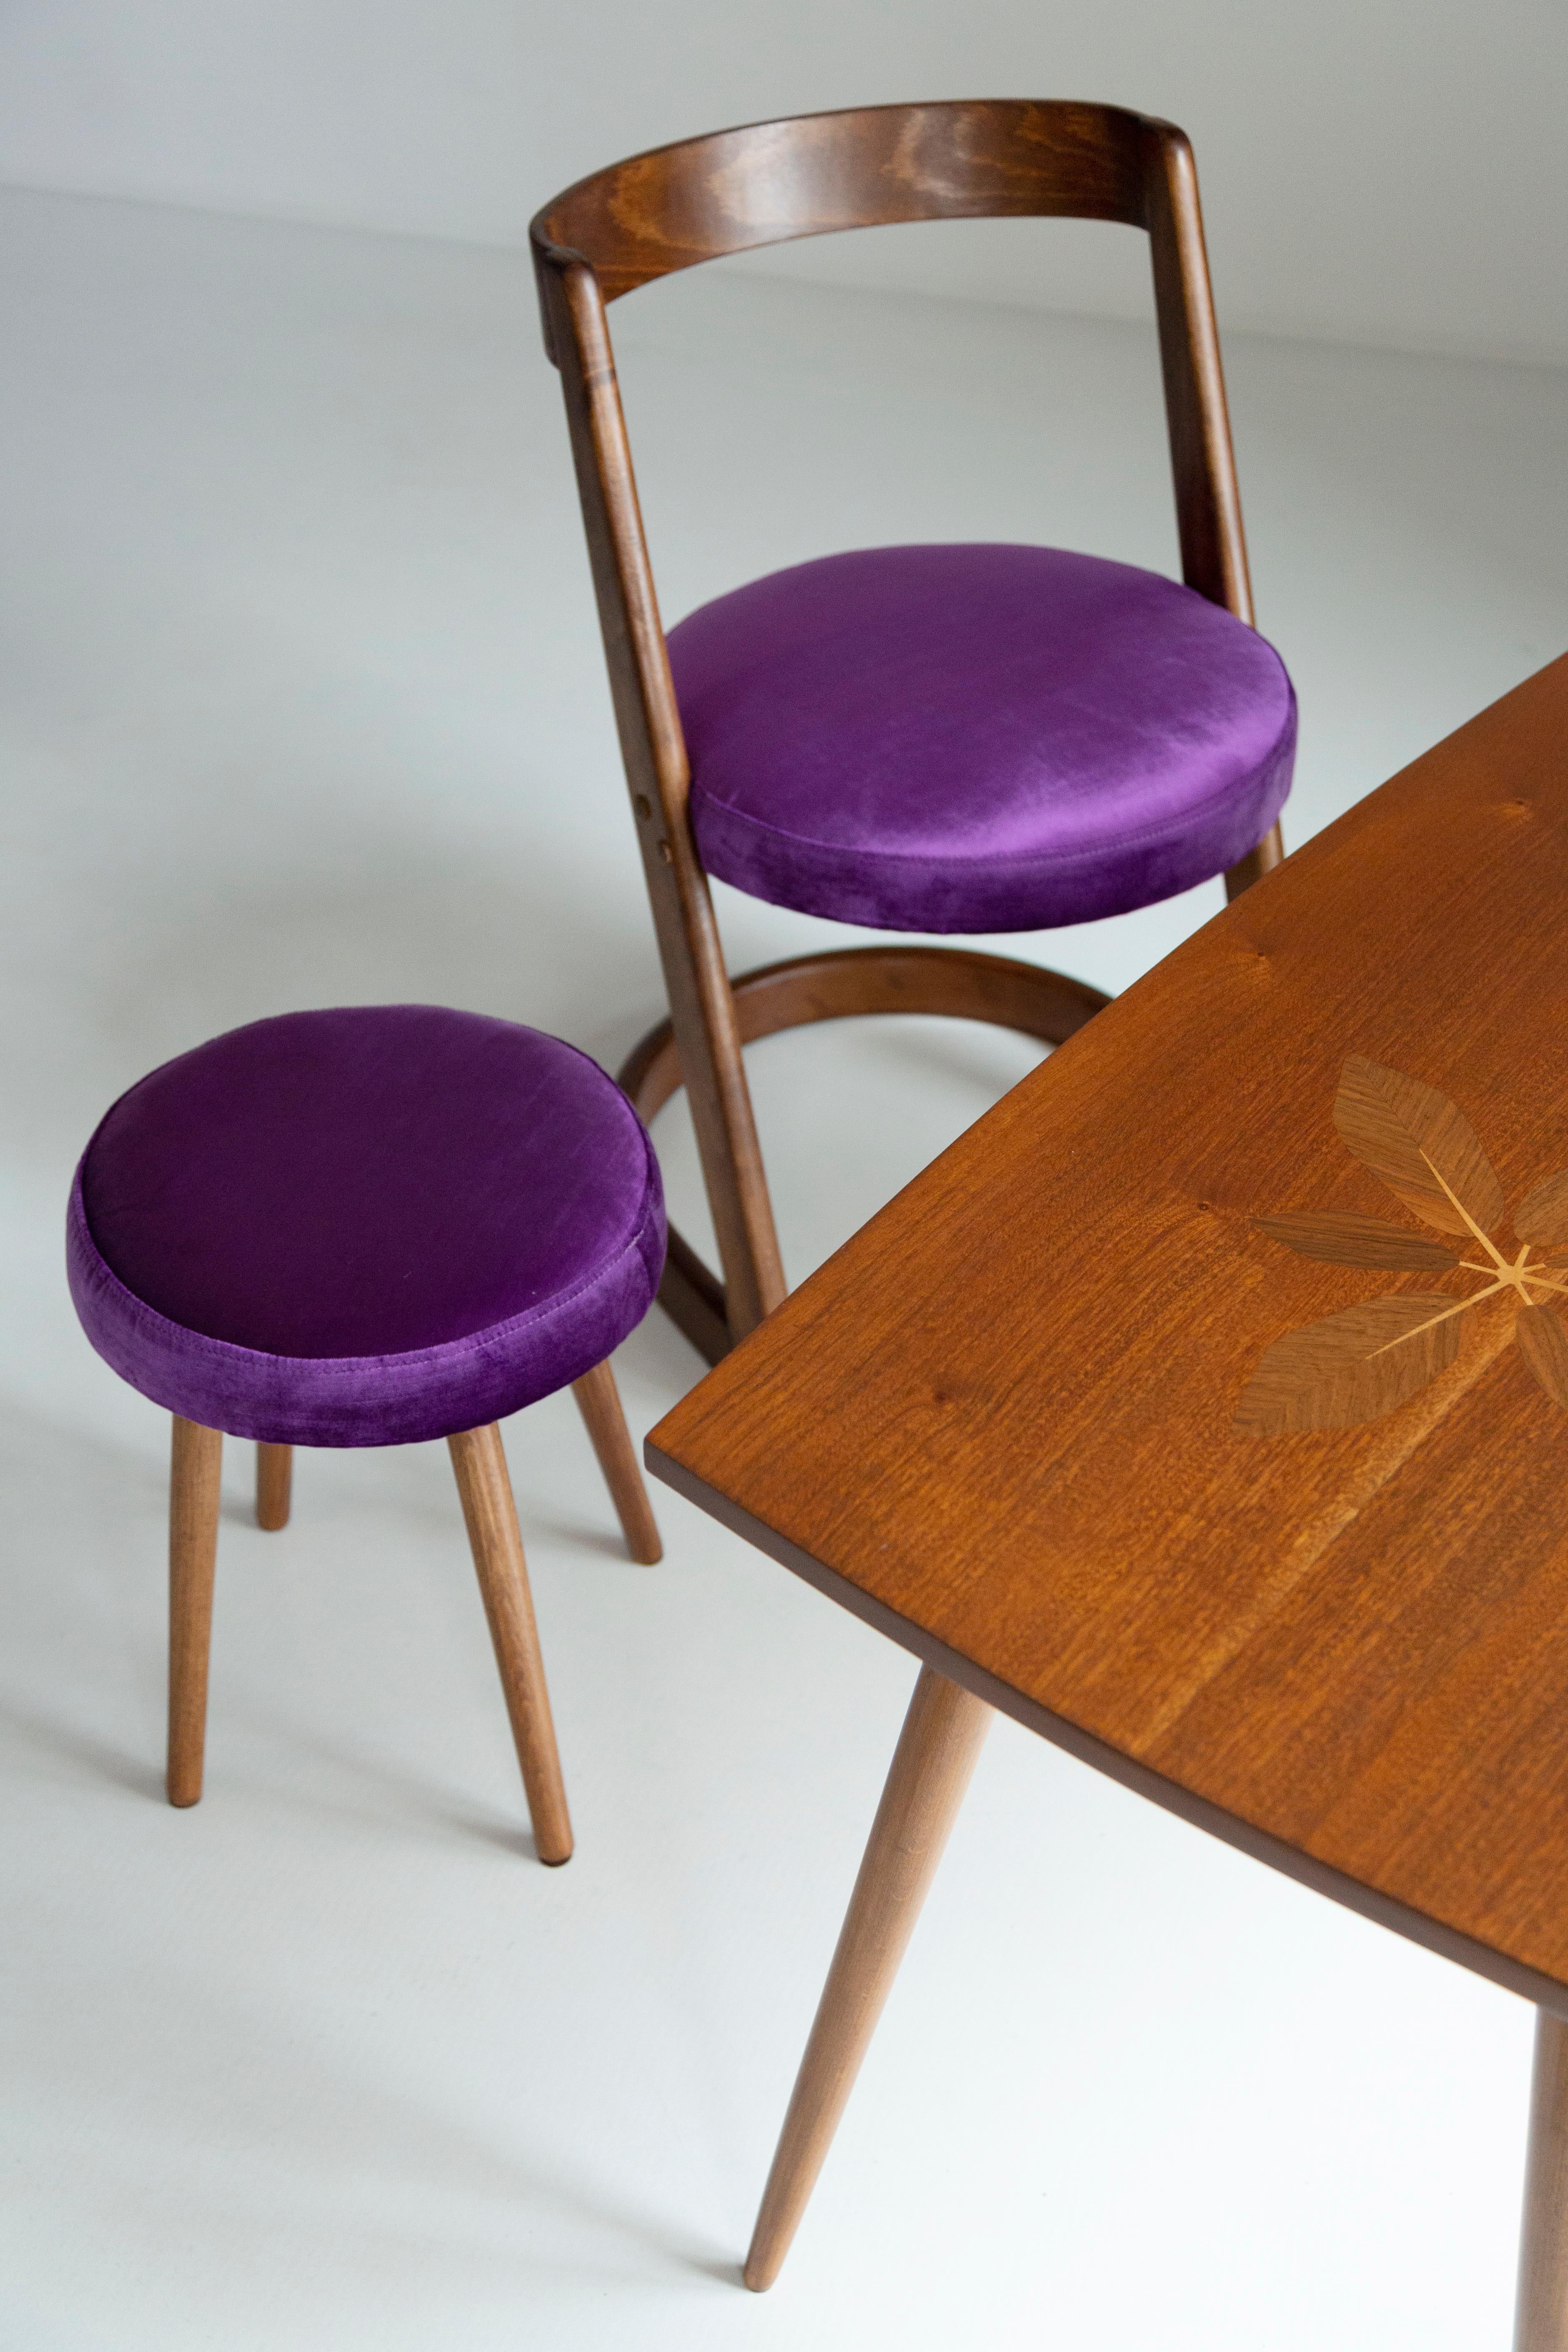 Halfa Chair, entworfen von Baumann in den 1970er Jahren. 
Im Katalog der Avantgarde-Sammlung.
Hergestellt aus 5 Stücken Doubs-Buche.

Hergestellt aus Buchenholz. Der Stuhl wurde komplett neu gepolstert, die Holzarbeiten wurden aufgefrischt. Der Sitz